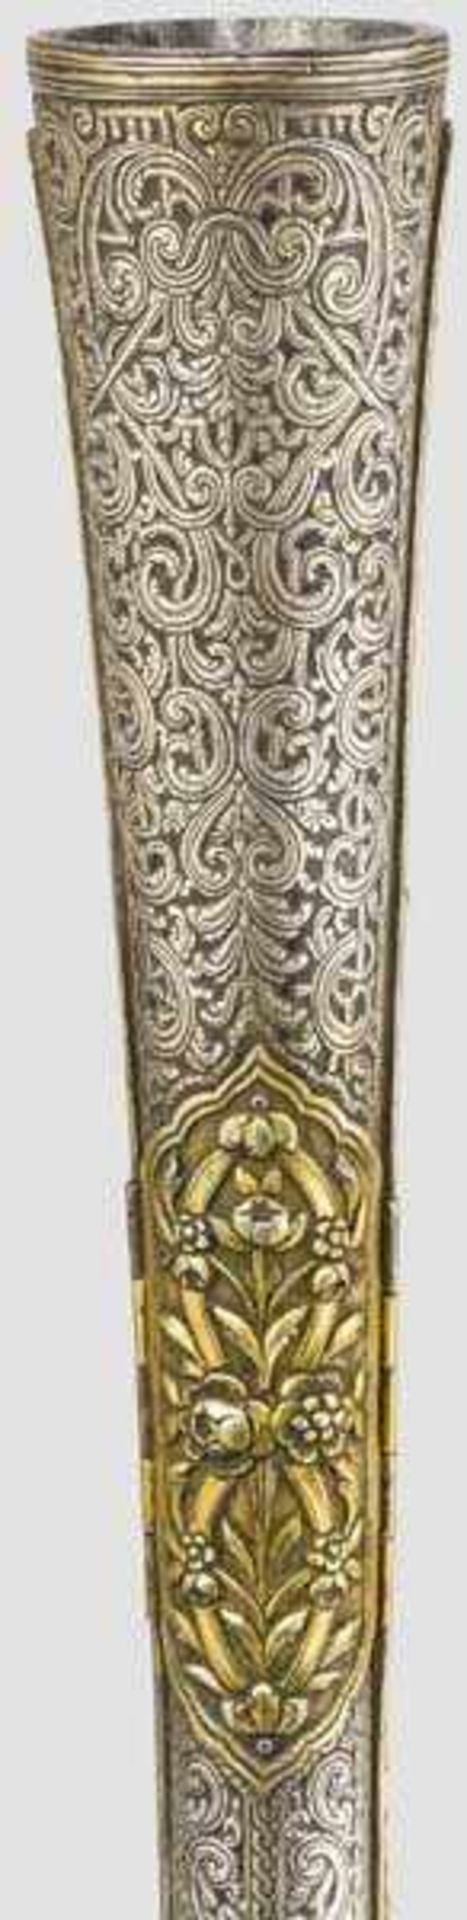 Luxus-Steinschloss-Tromblon mit Schaft aus vergoldetem Silber, osmanisch um 1810 Achtkantiger, in - Bild 7 aus 8